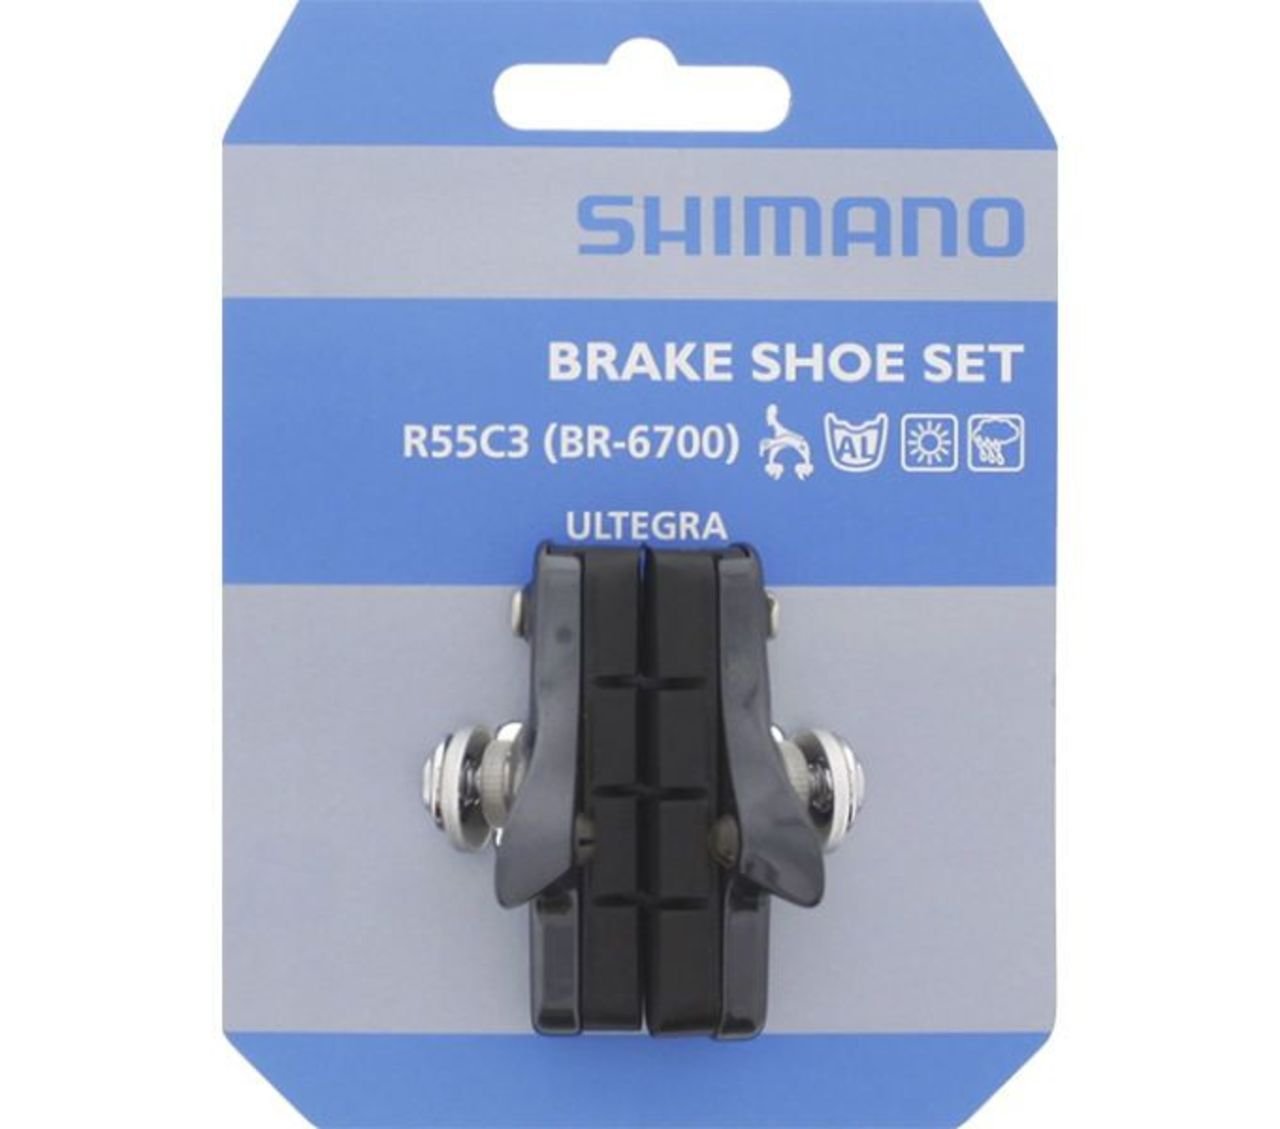 Тормозные колодки Shimano, brake pad, R55C3, Cartridge, for BR-6700, for aluminium rim, 1 pair, A154773 колодки тормозные fsa для карбоновых ободов 4шт